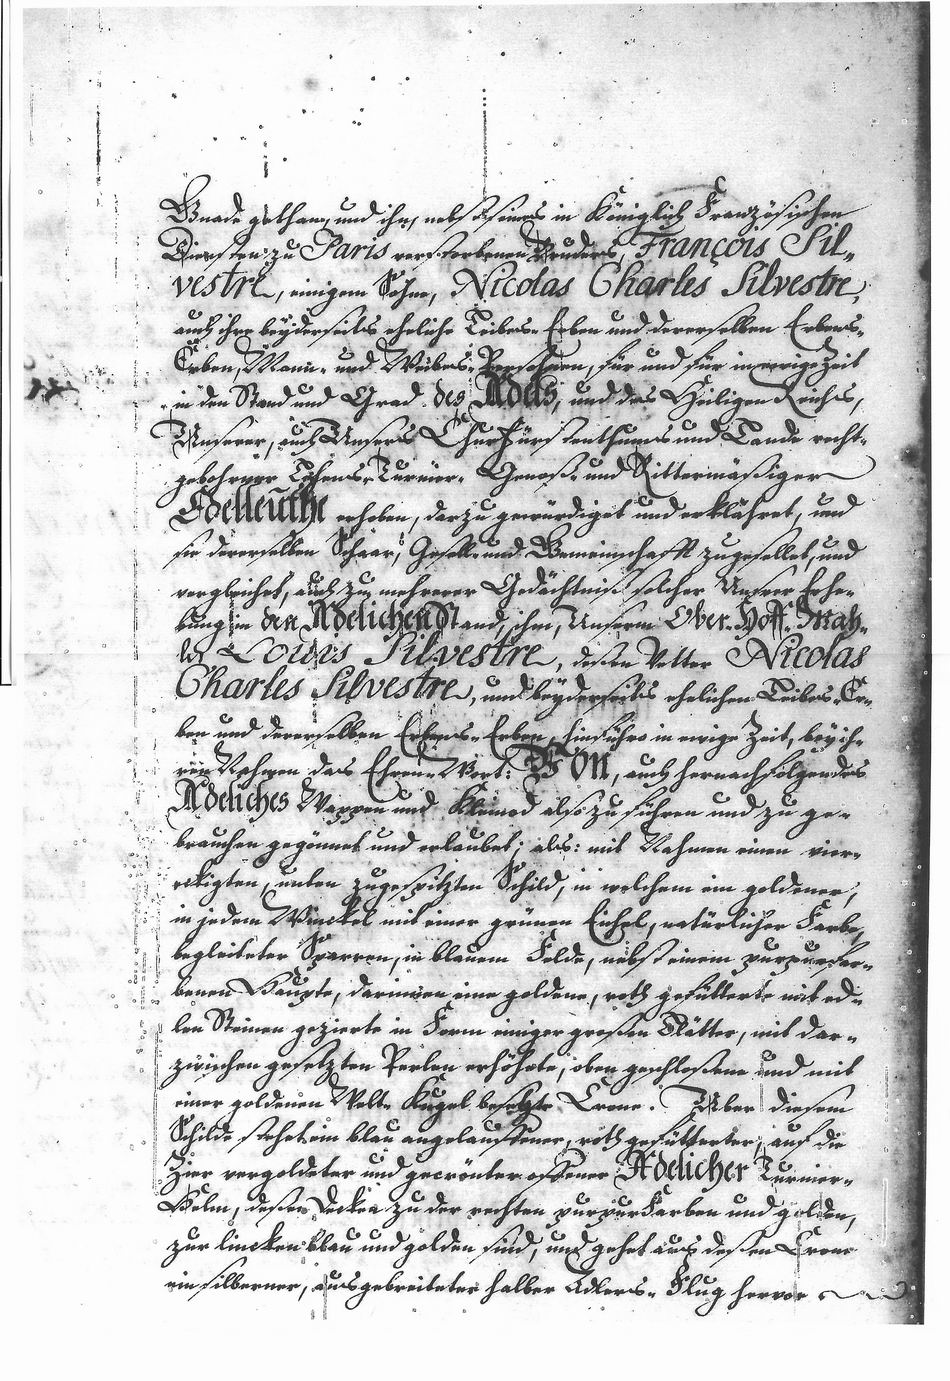 Lettres de noblesse pour Louis de Silvestre et Nicolas-Charles de Silvestre - Page 3/6